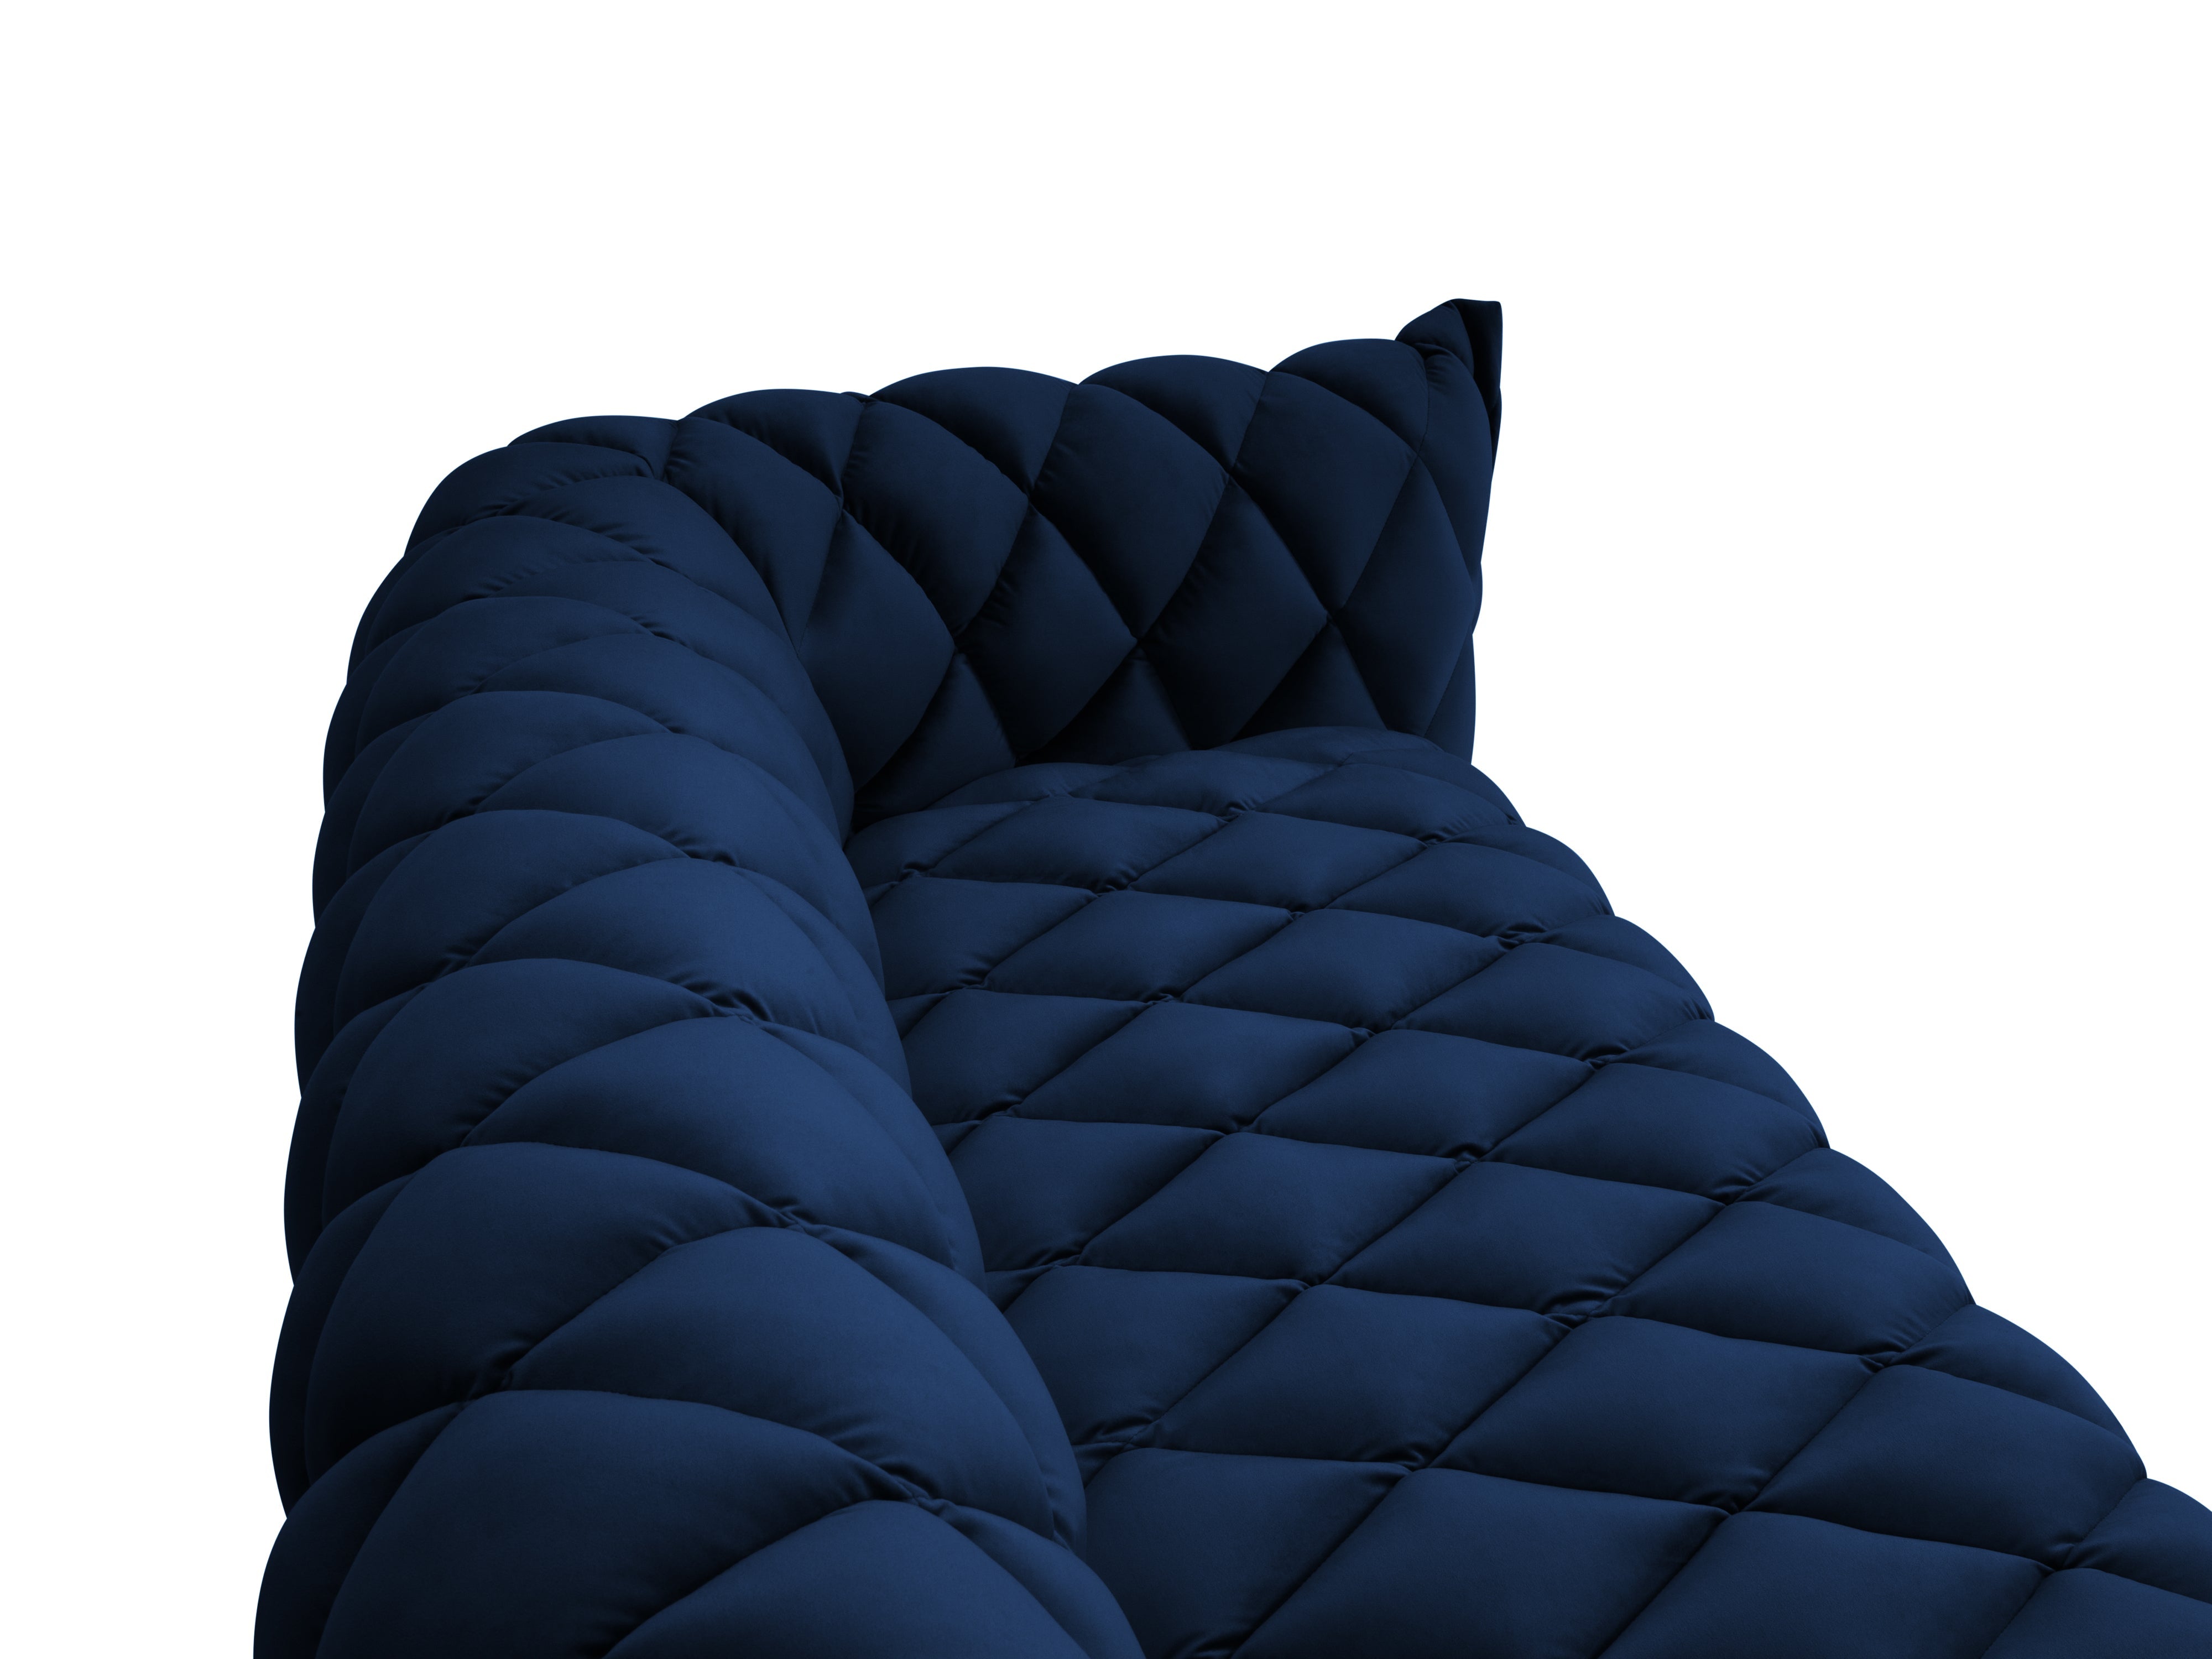 3-seater velvet sofa FLANDRIN royal blue